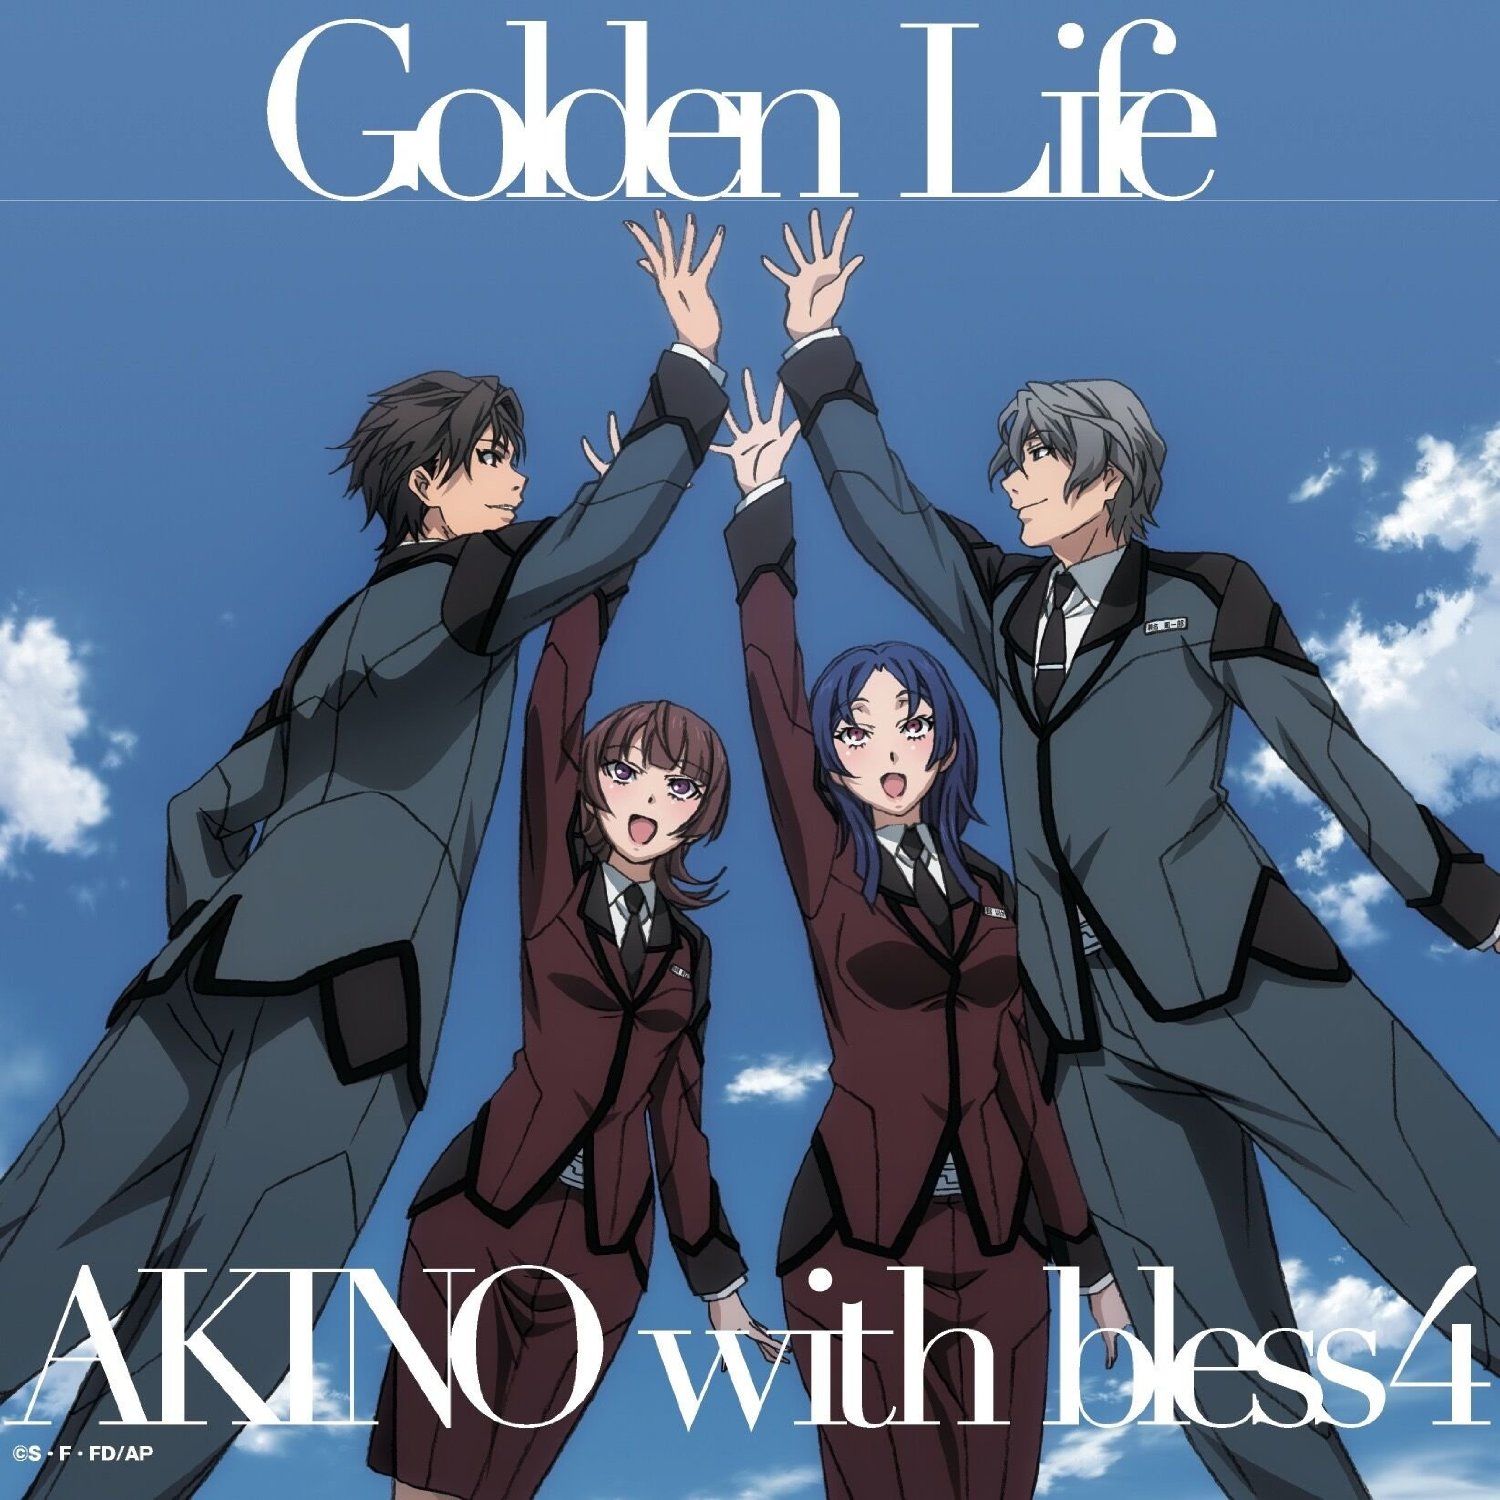 액티브 레이드 기동 강습실 제8계 OP - Golden Life／AKINO with bless4